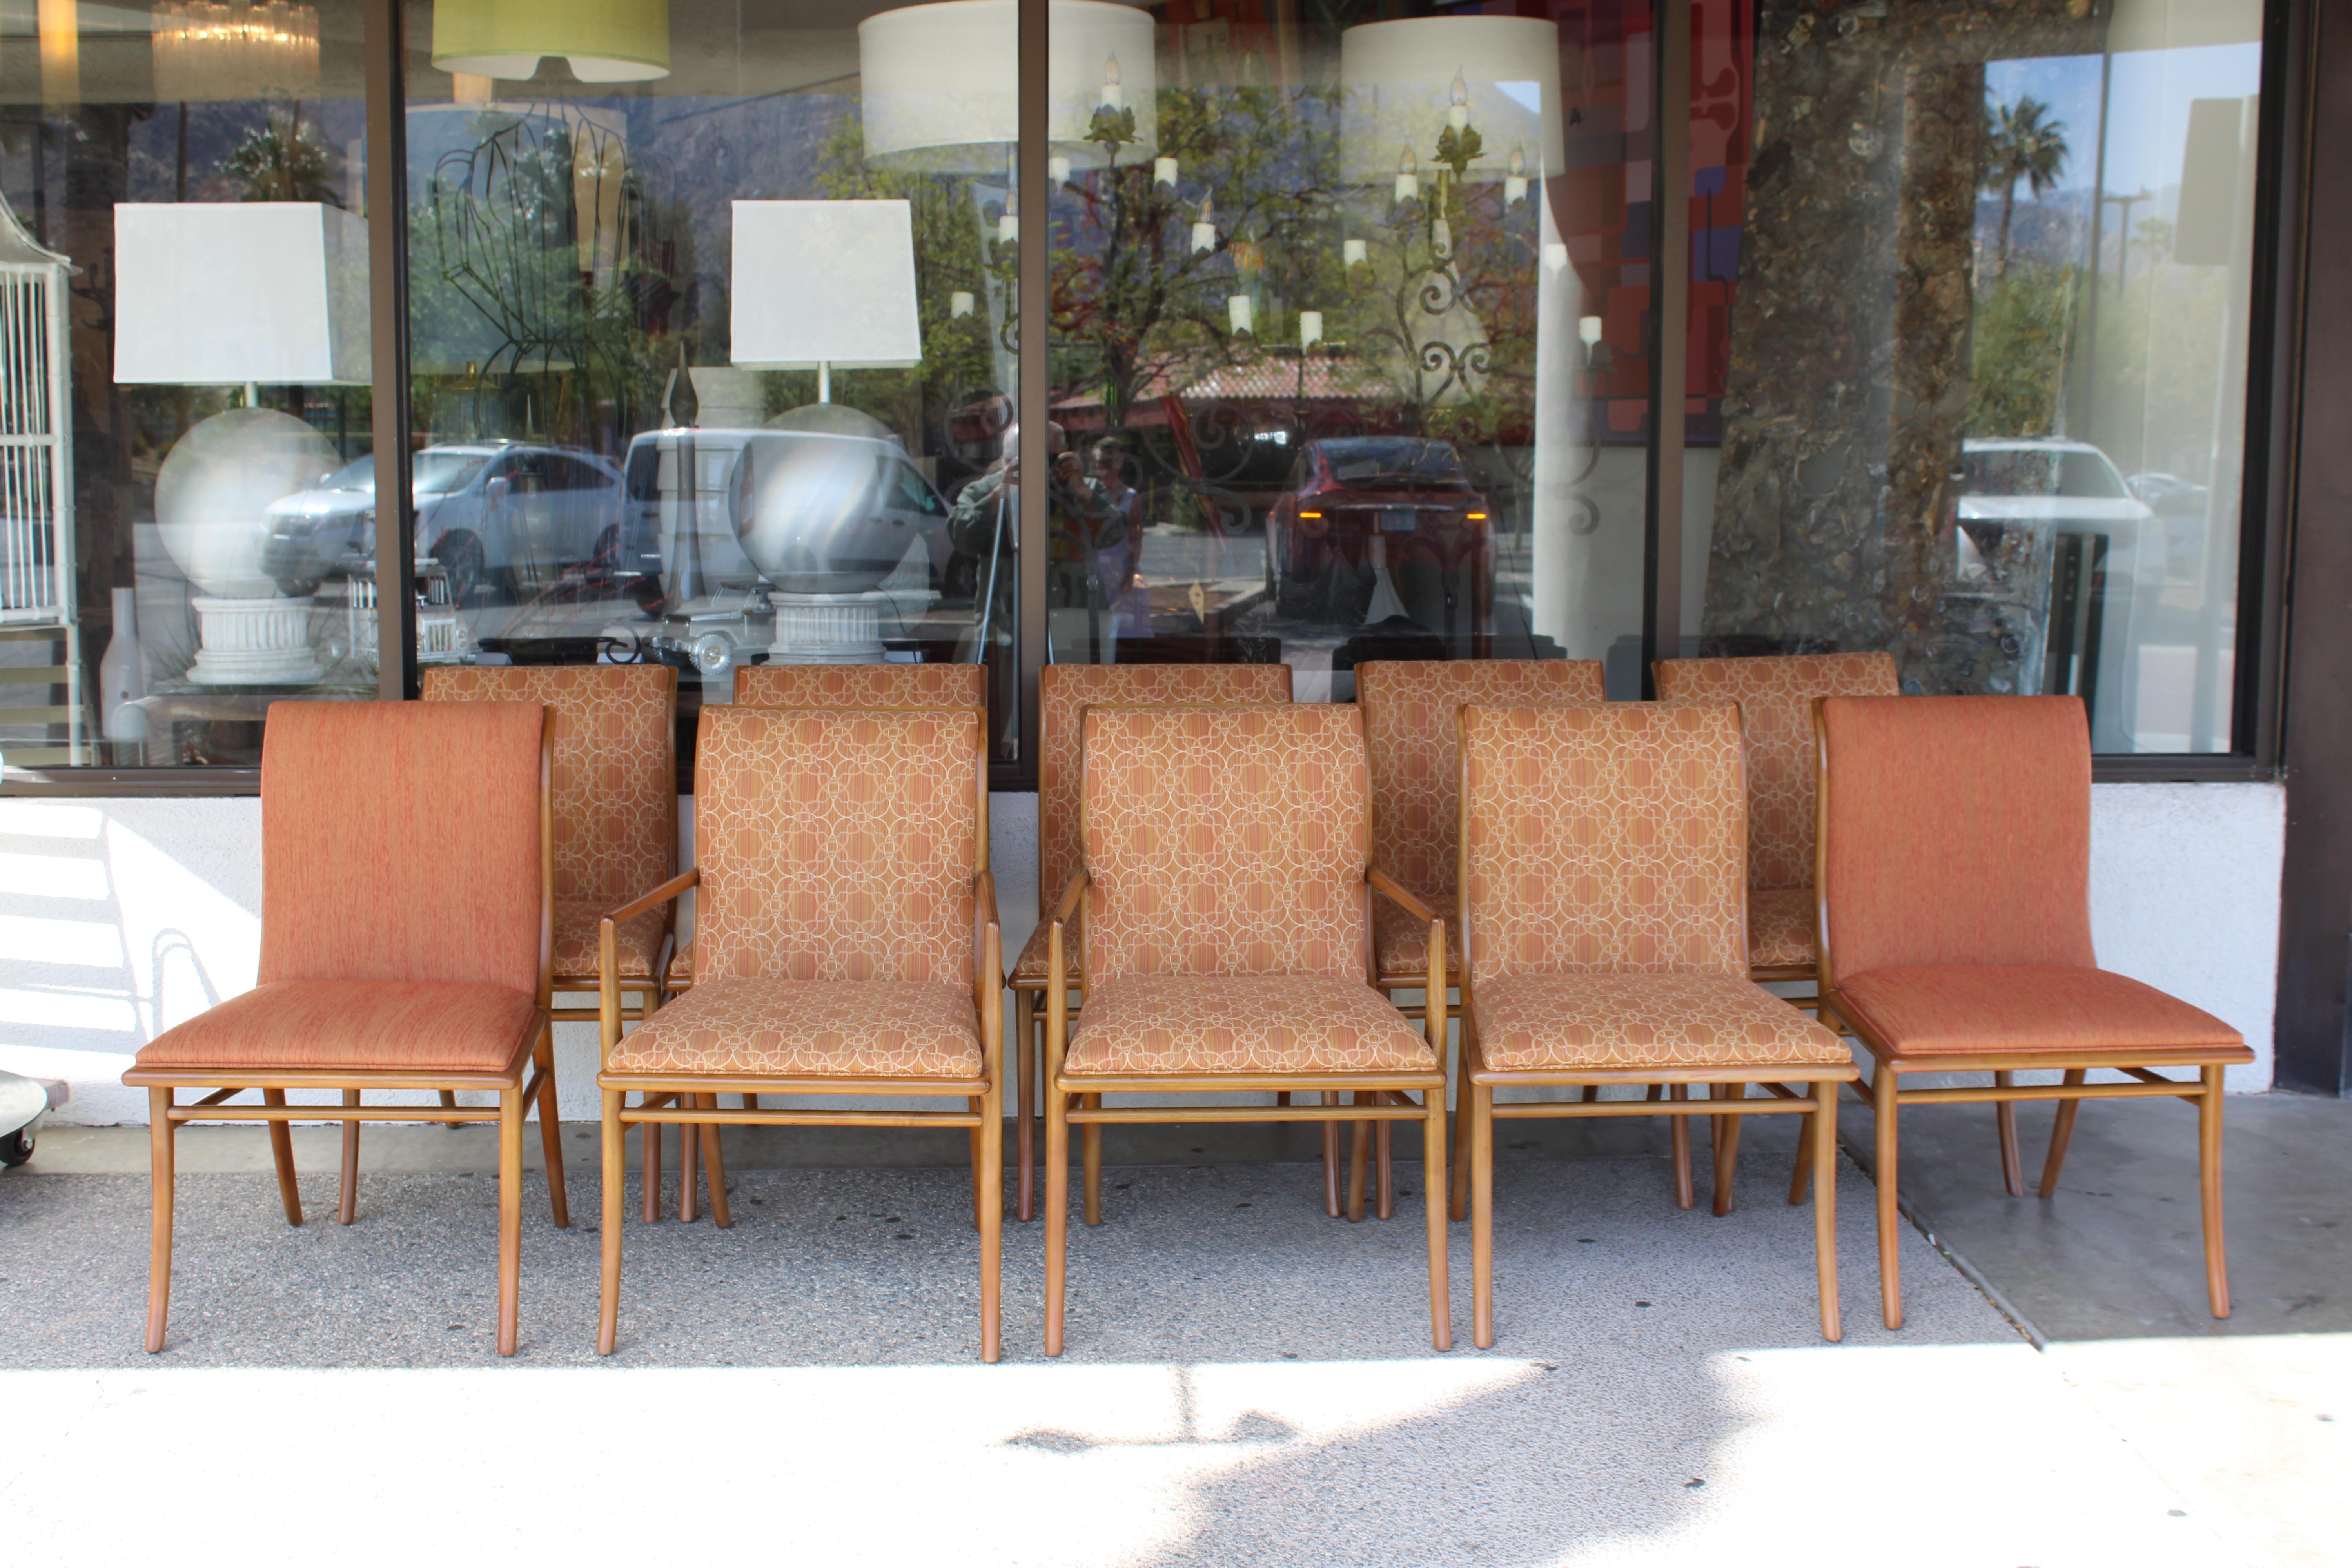 Zehn Esszimmerstühle mit Säbelbeinen von T.H. Robsjohn-Gibbings (1905-1976) für Widdicomb. Die Stühle sind strukturell gesund und die Holzbeize ist original. Wir glauben, dass diese Stühle von den ursprünglichen Besitzern neu gepolstert wurden. Die